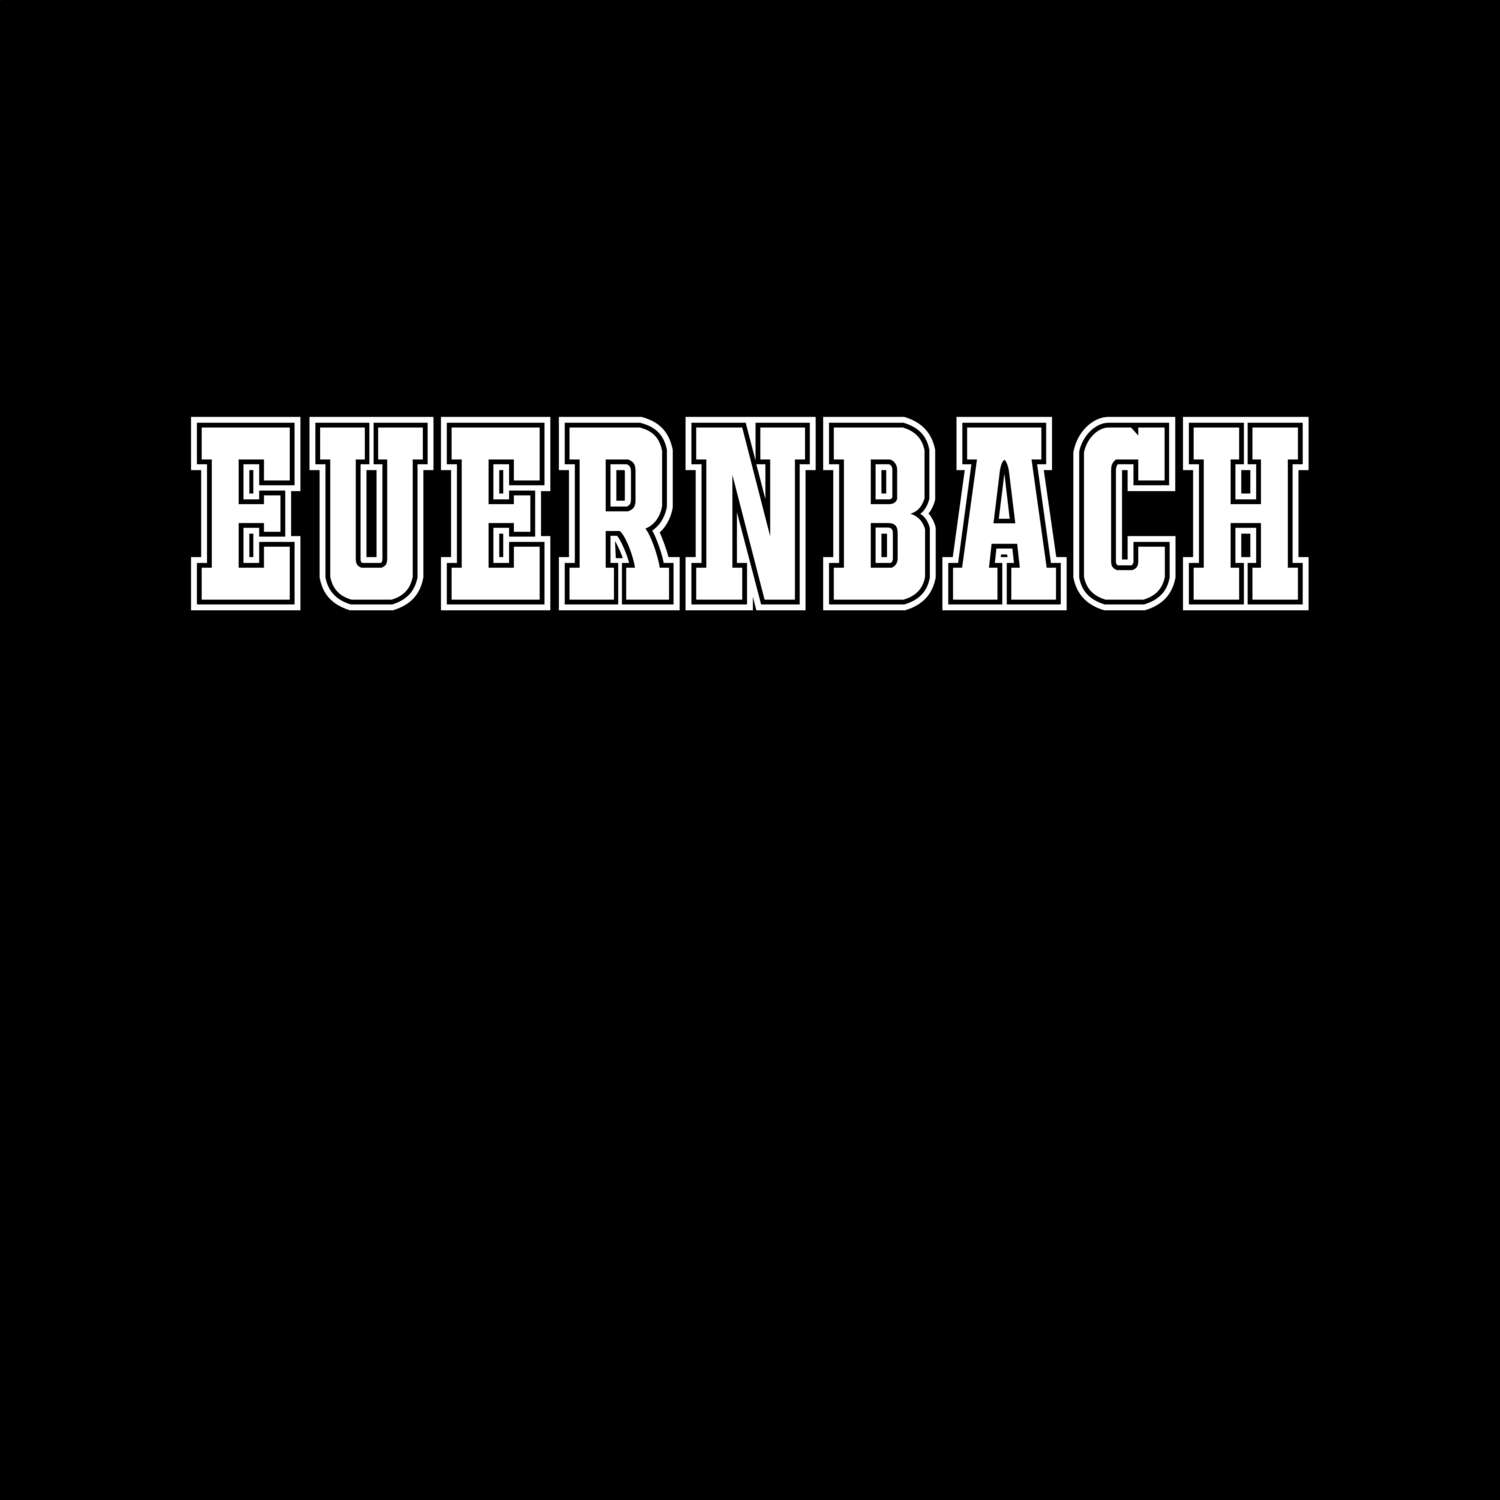 Euernbach T-Shirt »Classic«